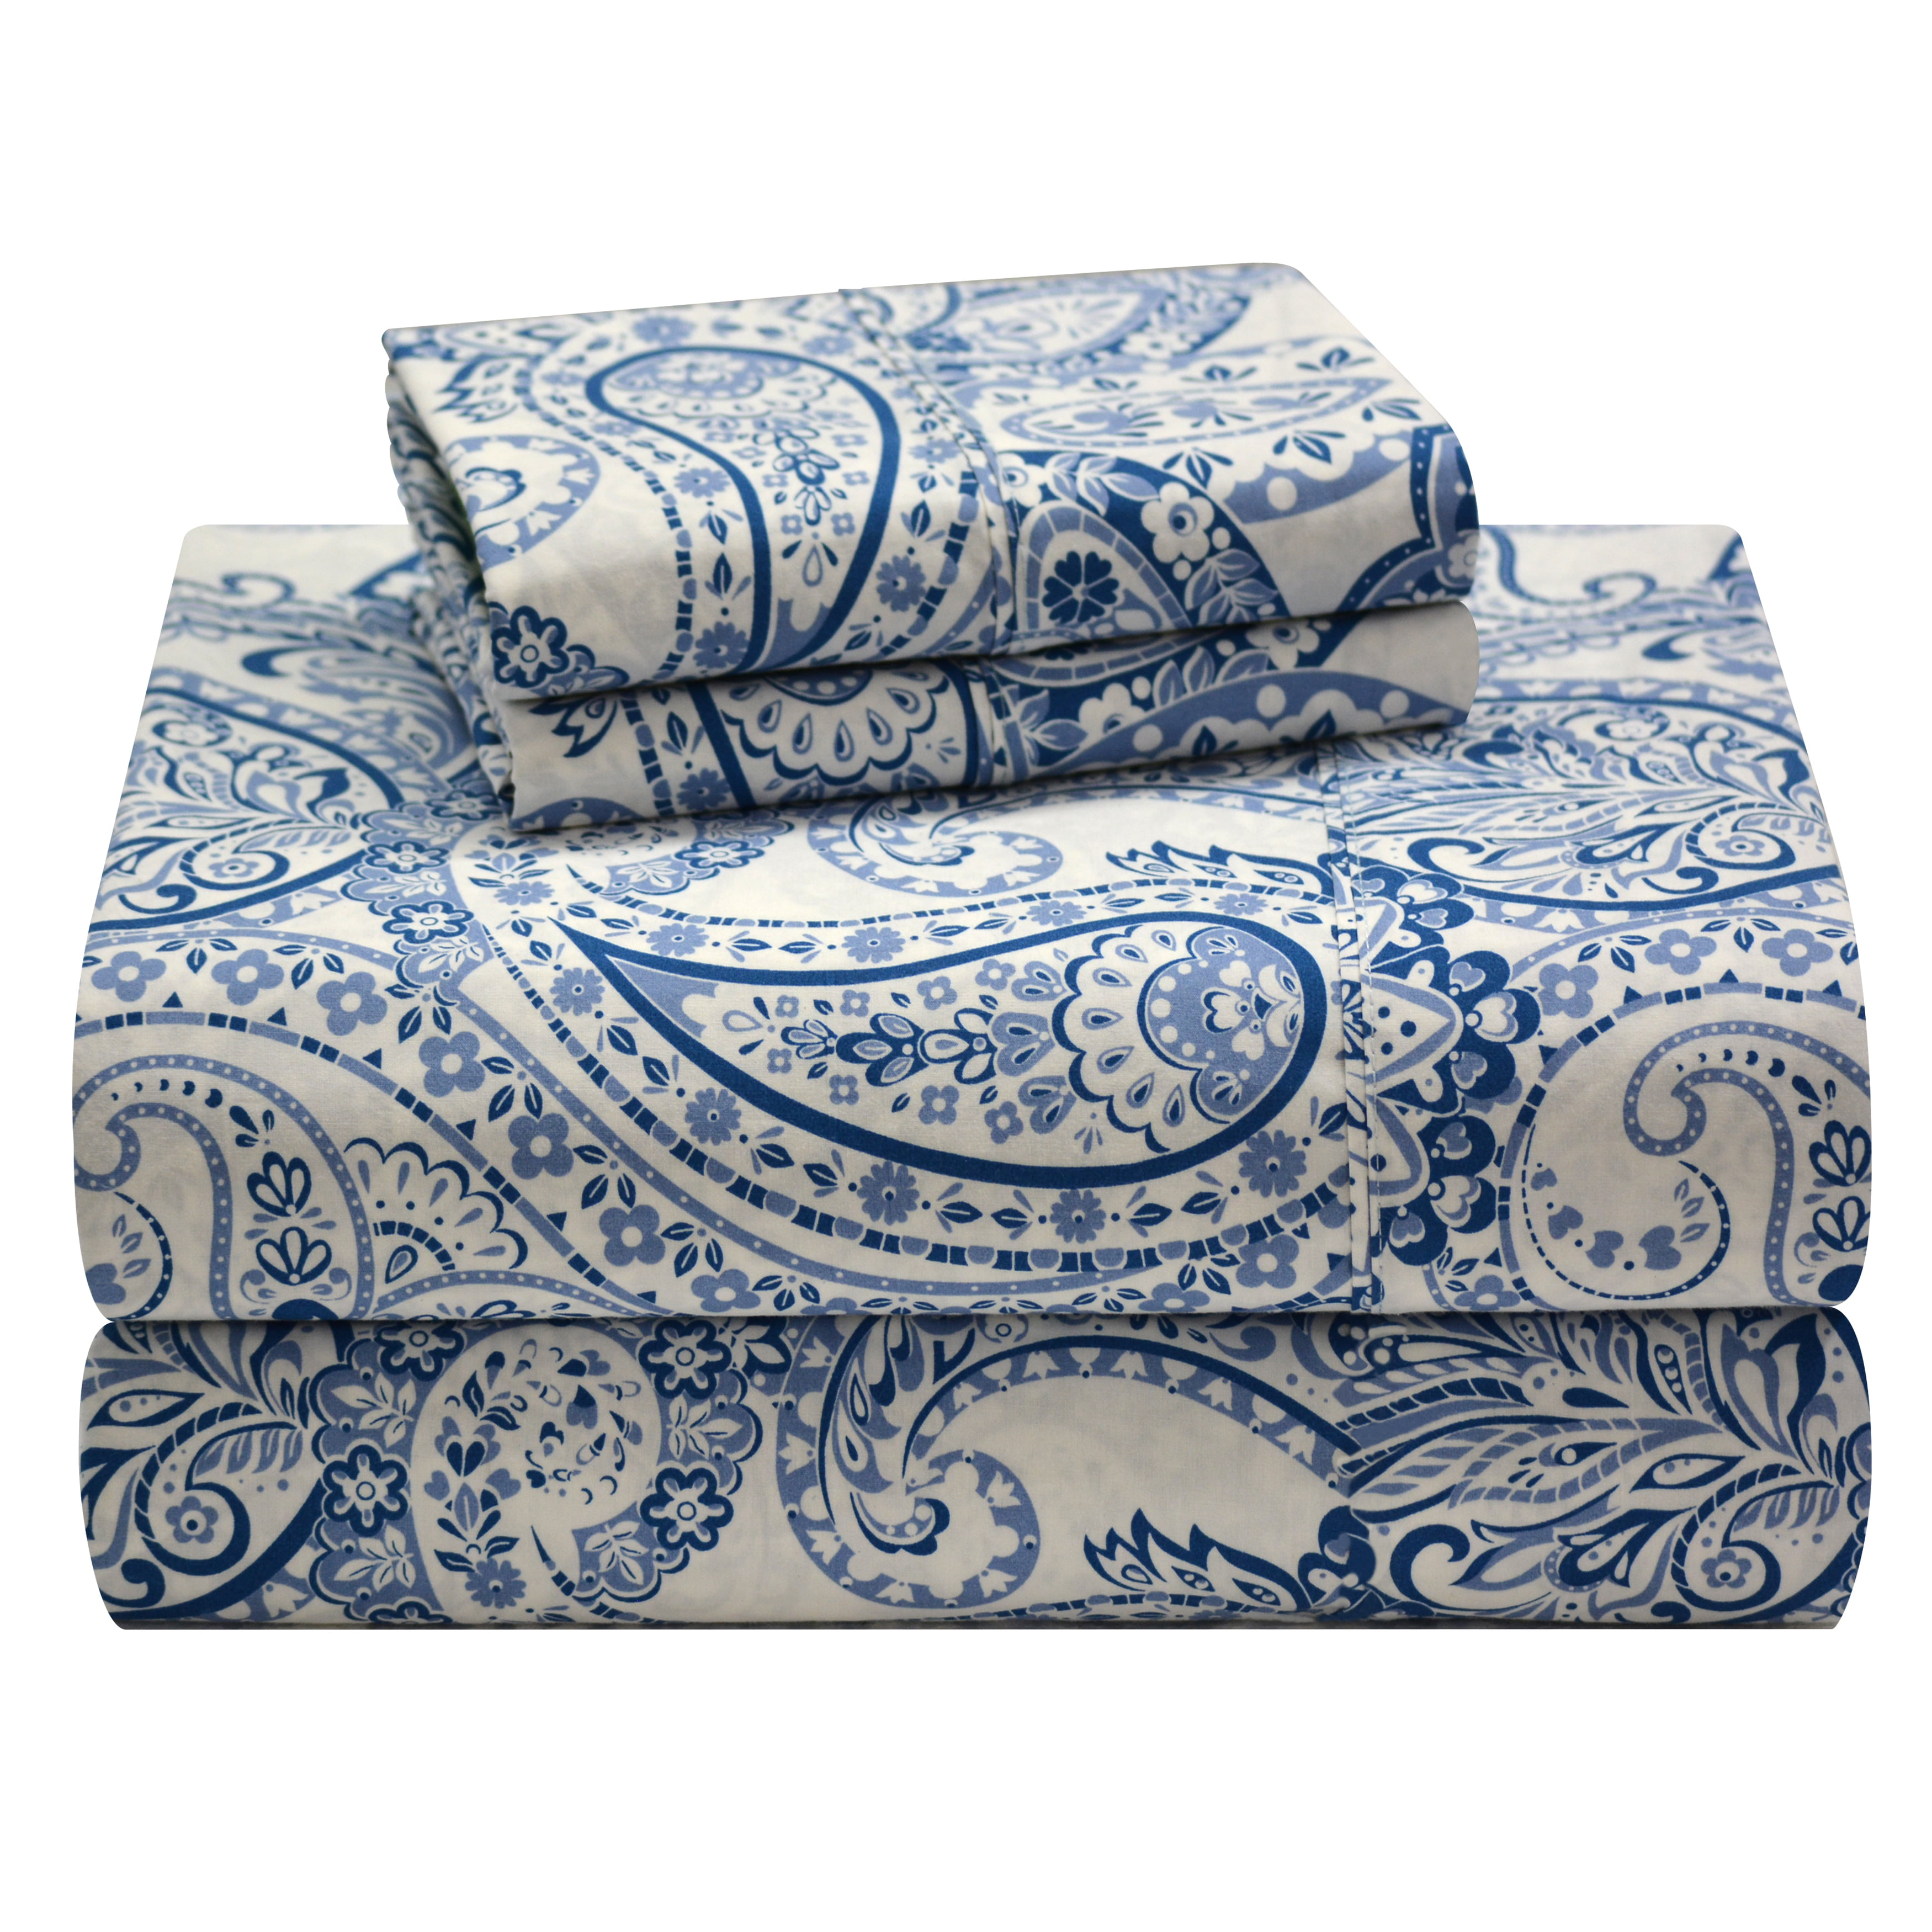 Boho Paisley Blue Combed Cotton Printed Sheet Set - King, Boho Paisley ...